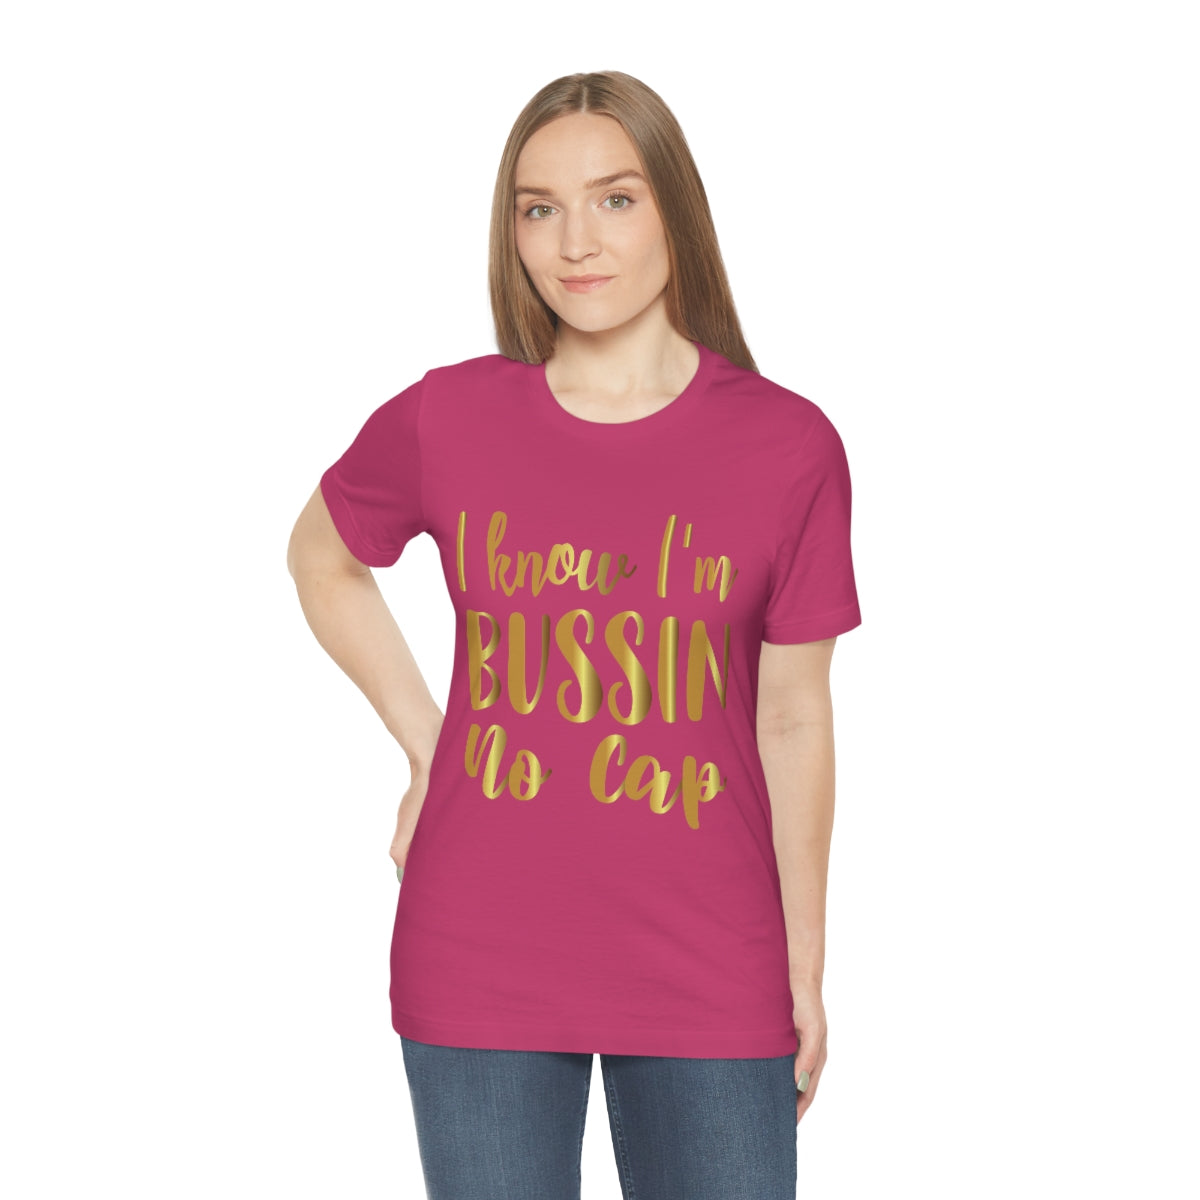 Affirmation Feminist Pro Choice T-Shirt Unisex Size, I Know I Am Printify